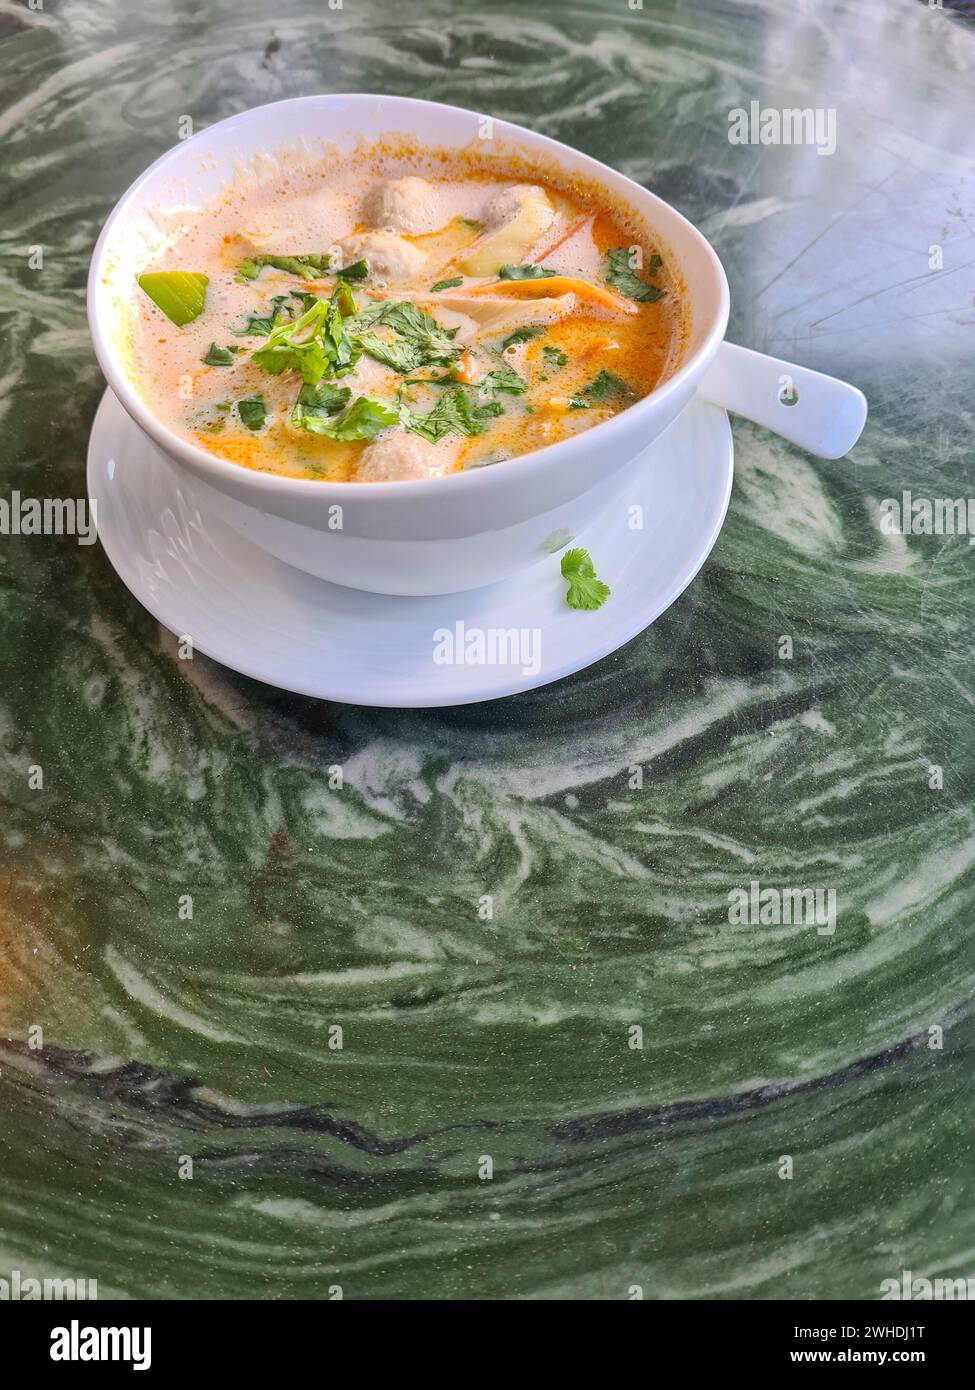 Tom Kha GAI, zuppa di pollo in una ciotola bianca, contiene gli ingredienti latte di cocco, galangal, citronella, pollo, porro e prezzemolo Foto Stock